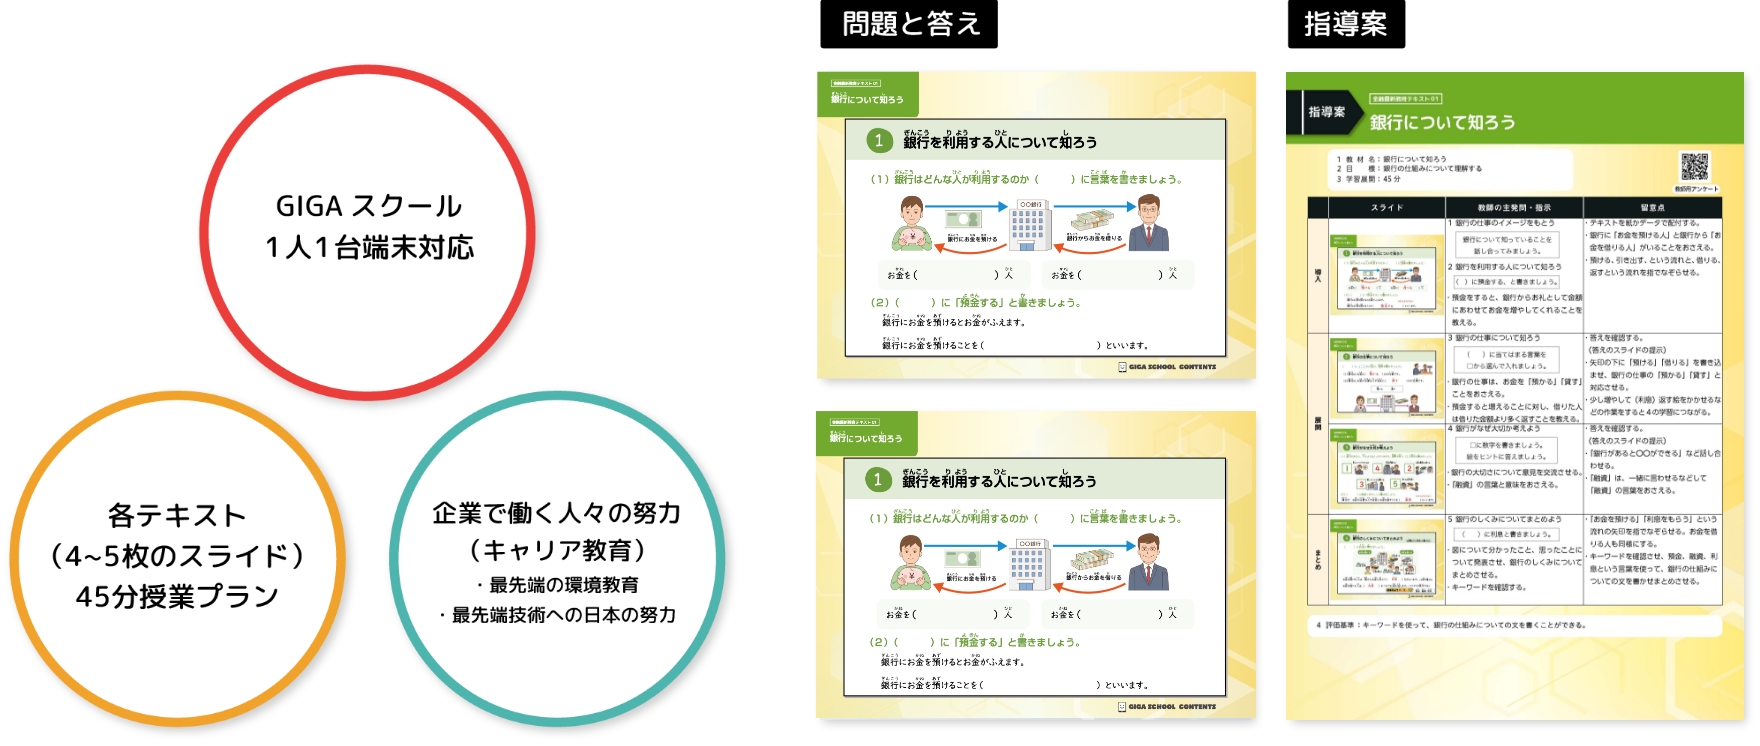 GIGAスクール 1人1台端末対応 各テキスト（4〜5枚のスライド）45分授業プラン 企業で働く人々の努力（キャリア教育） ・最先端の環境教育 ・最先端技術への日本の努力